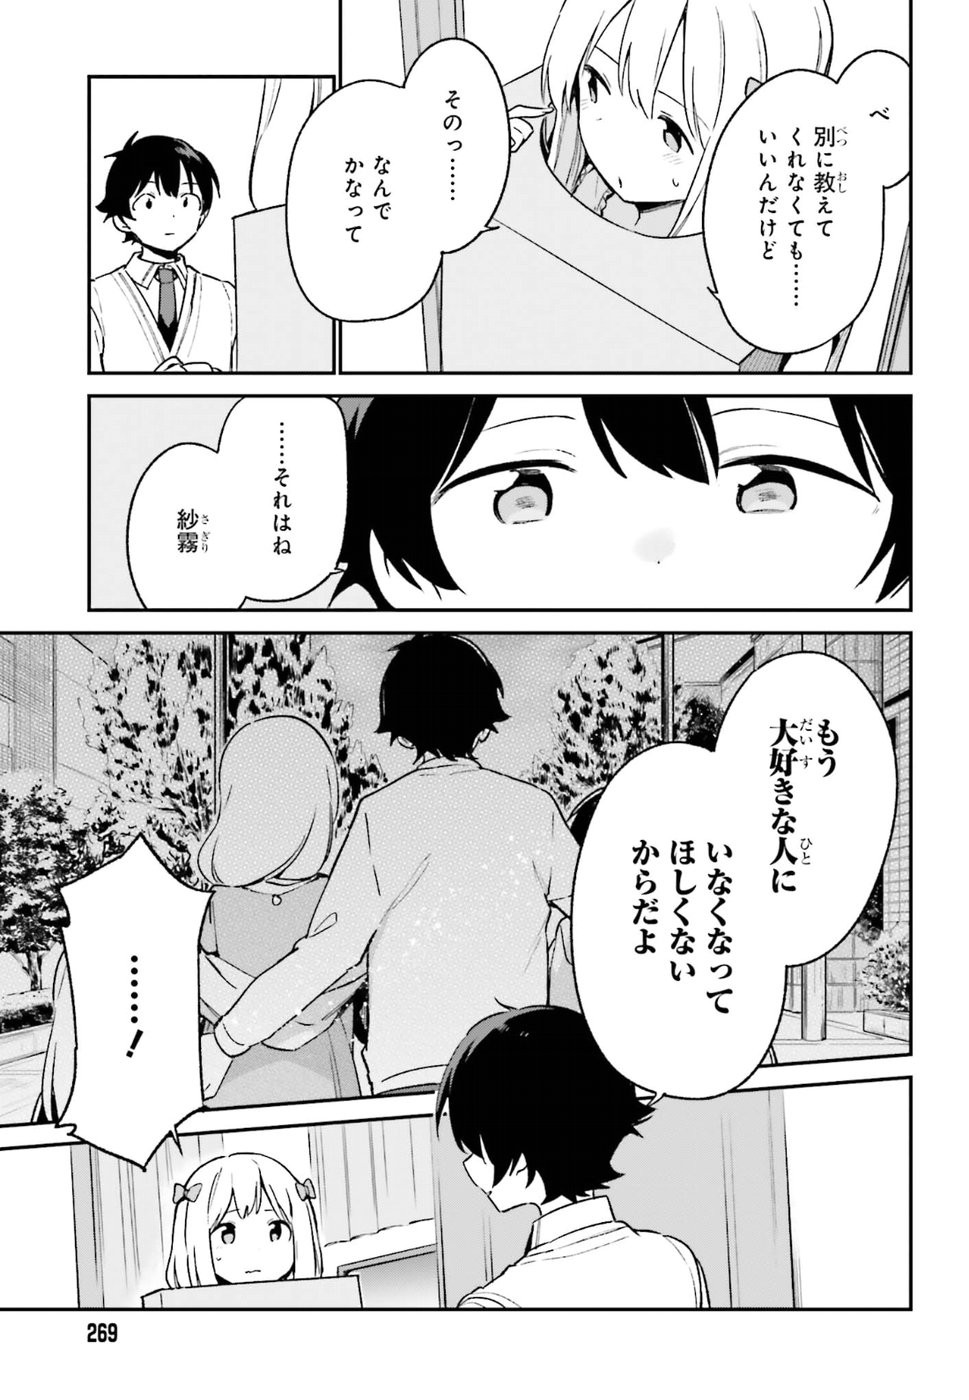 Ero Manga Sensei - Chapter 57 - Page 15